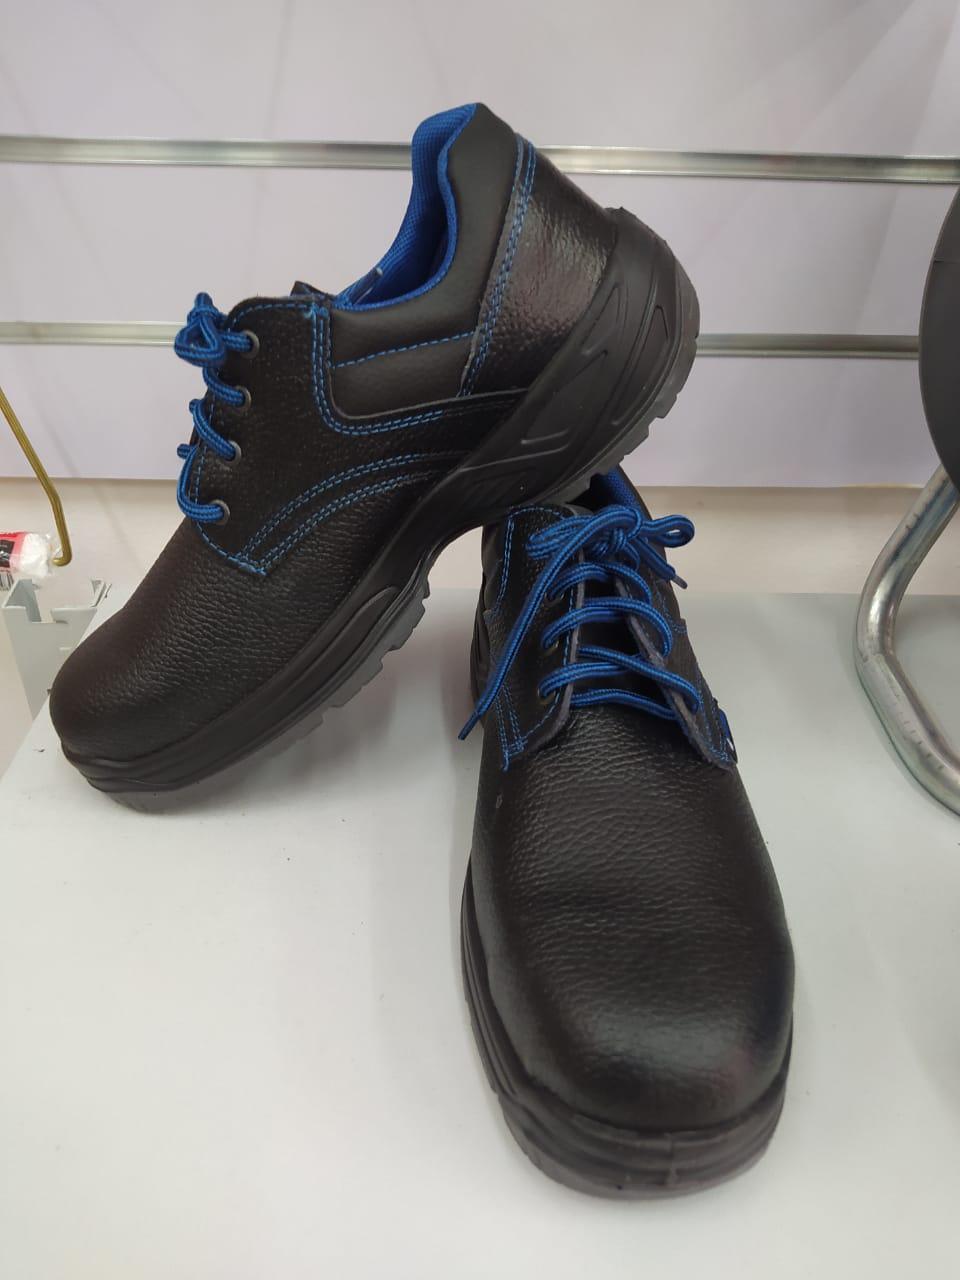 Полуботинки Demir Safety Shoes 40-45 размеры (спецобувь) (id 99481791)